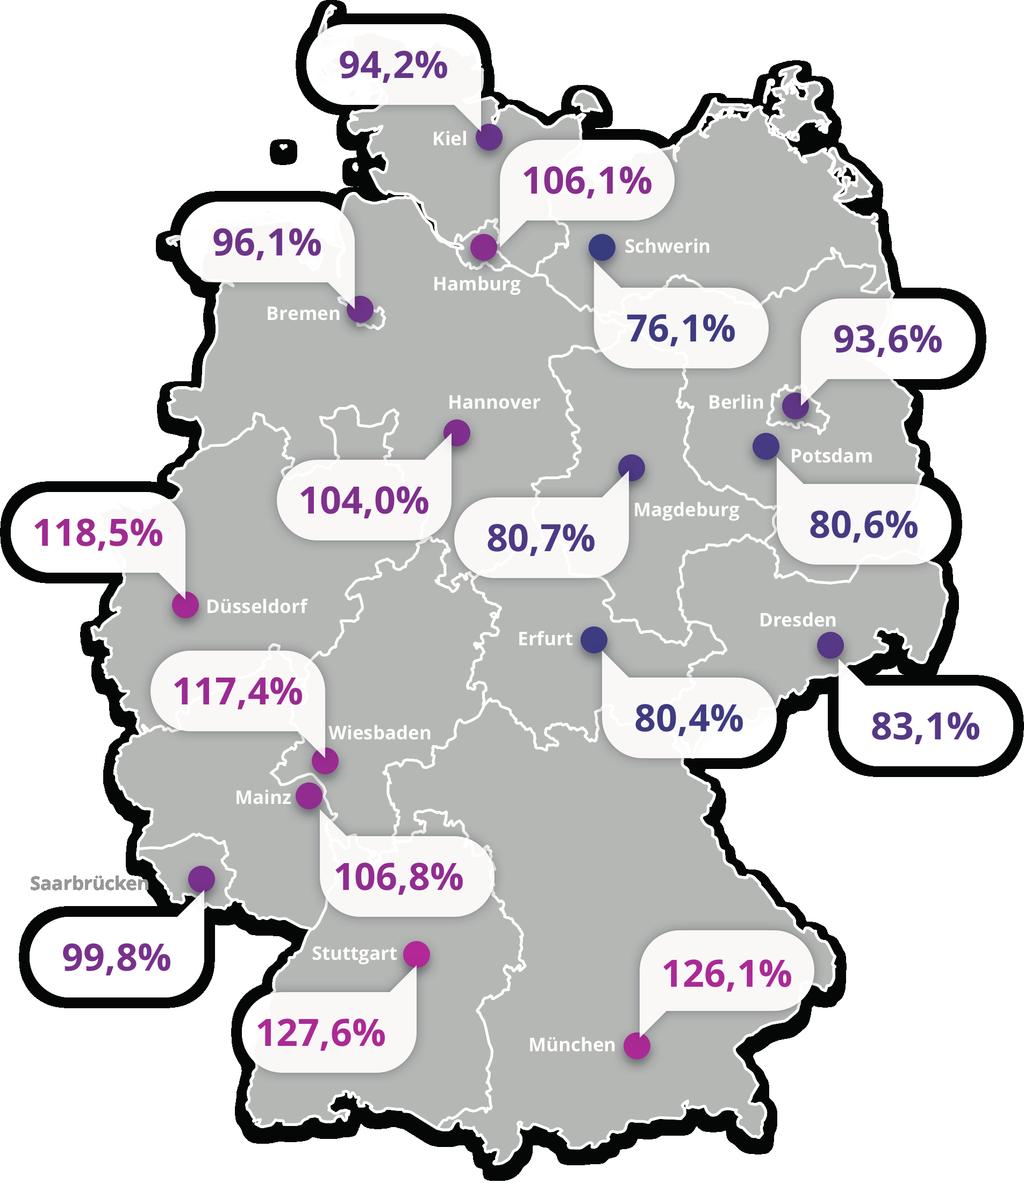 Regionalfaktor nach Landeshauptstädten Stuttgart liegt mit einem Lohnniveau von 127,6 Prozent auf dem ersten Rang im Landeshauptstadt-Ranking.